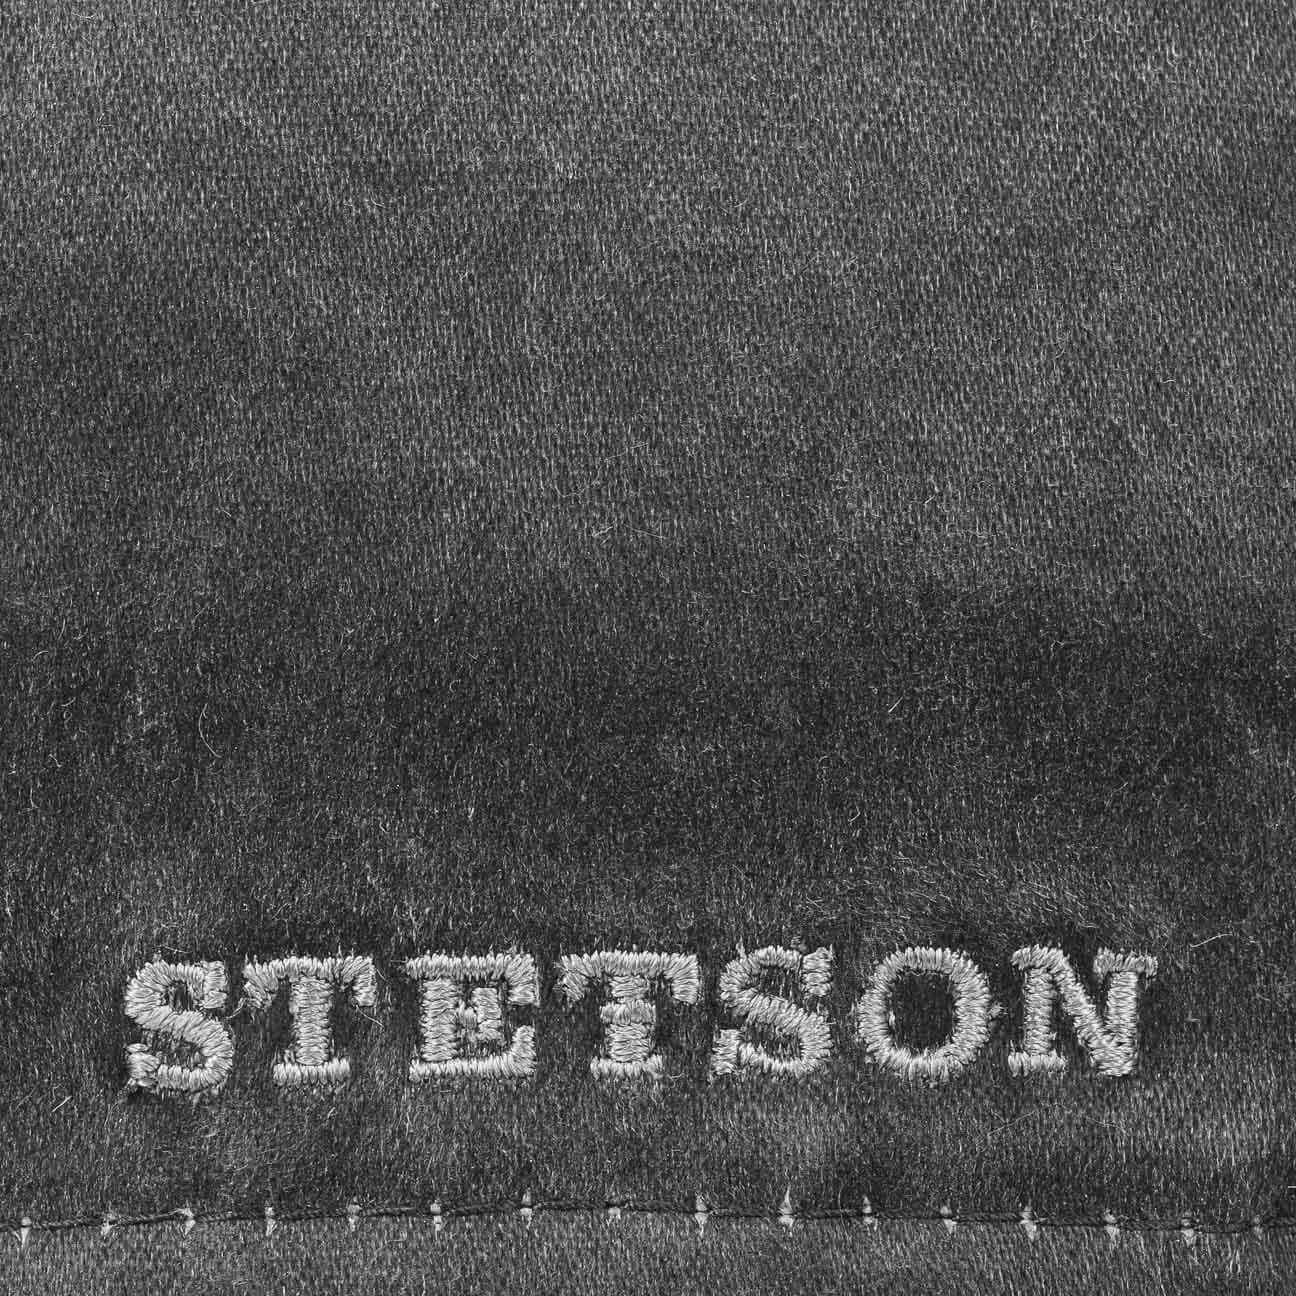 Stetson Flat Cap (1-St) mit Schirm Baumwollcap schwarz